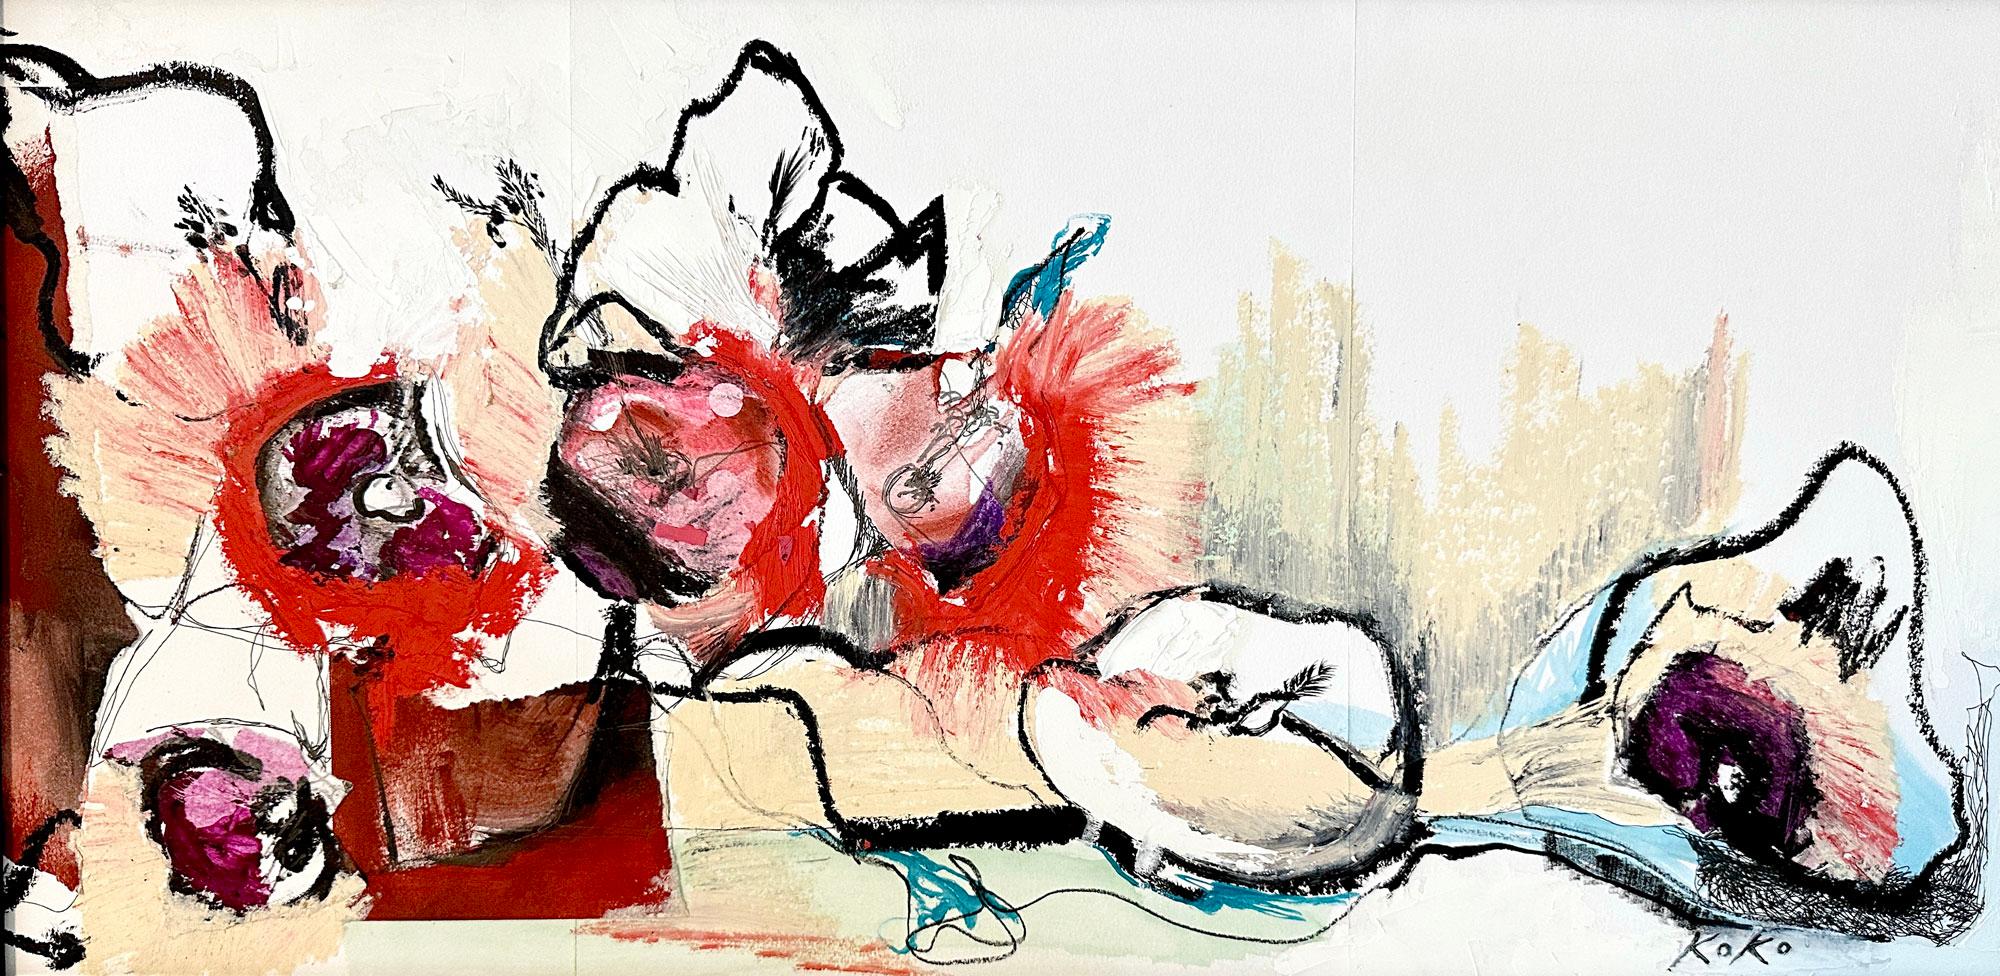 Abstract Painting KOKO HOVAGUIMIAN - Peinture à l'huile abstraite de fleurs rouges, composition florale, symphonie.